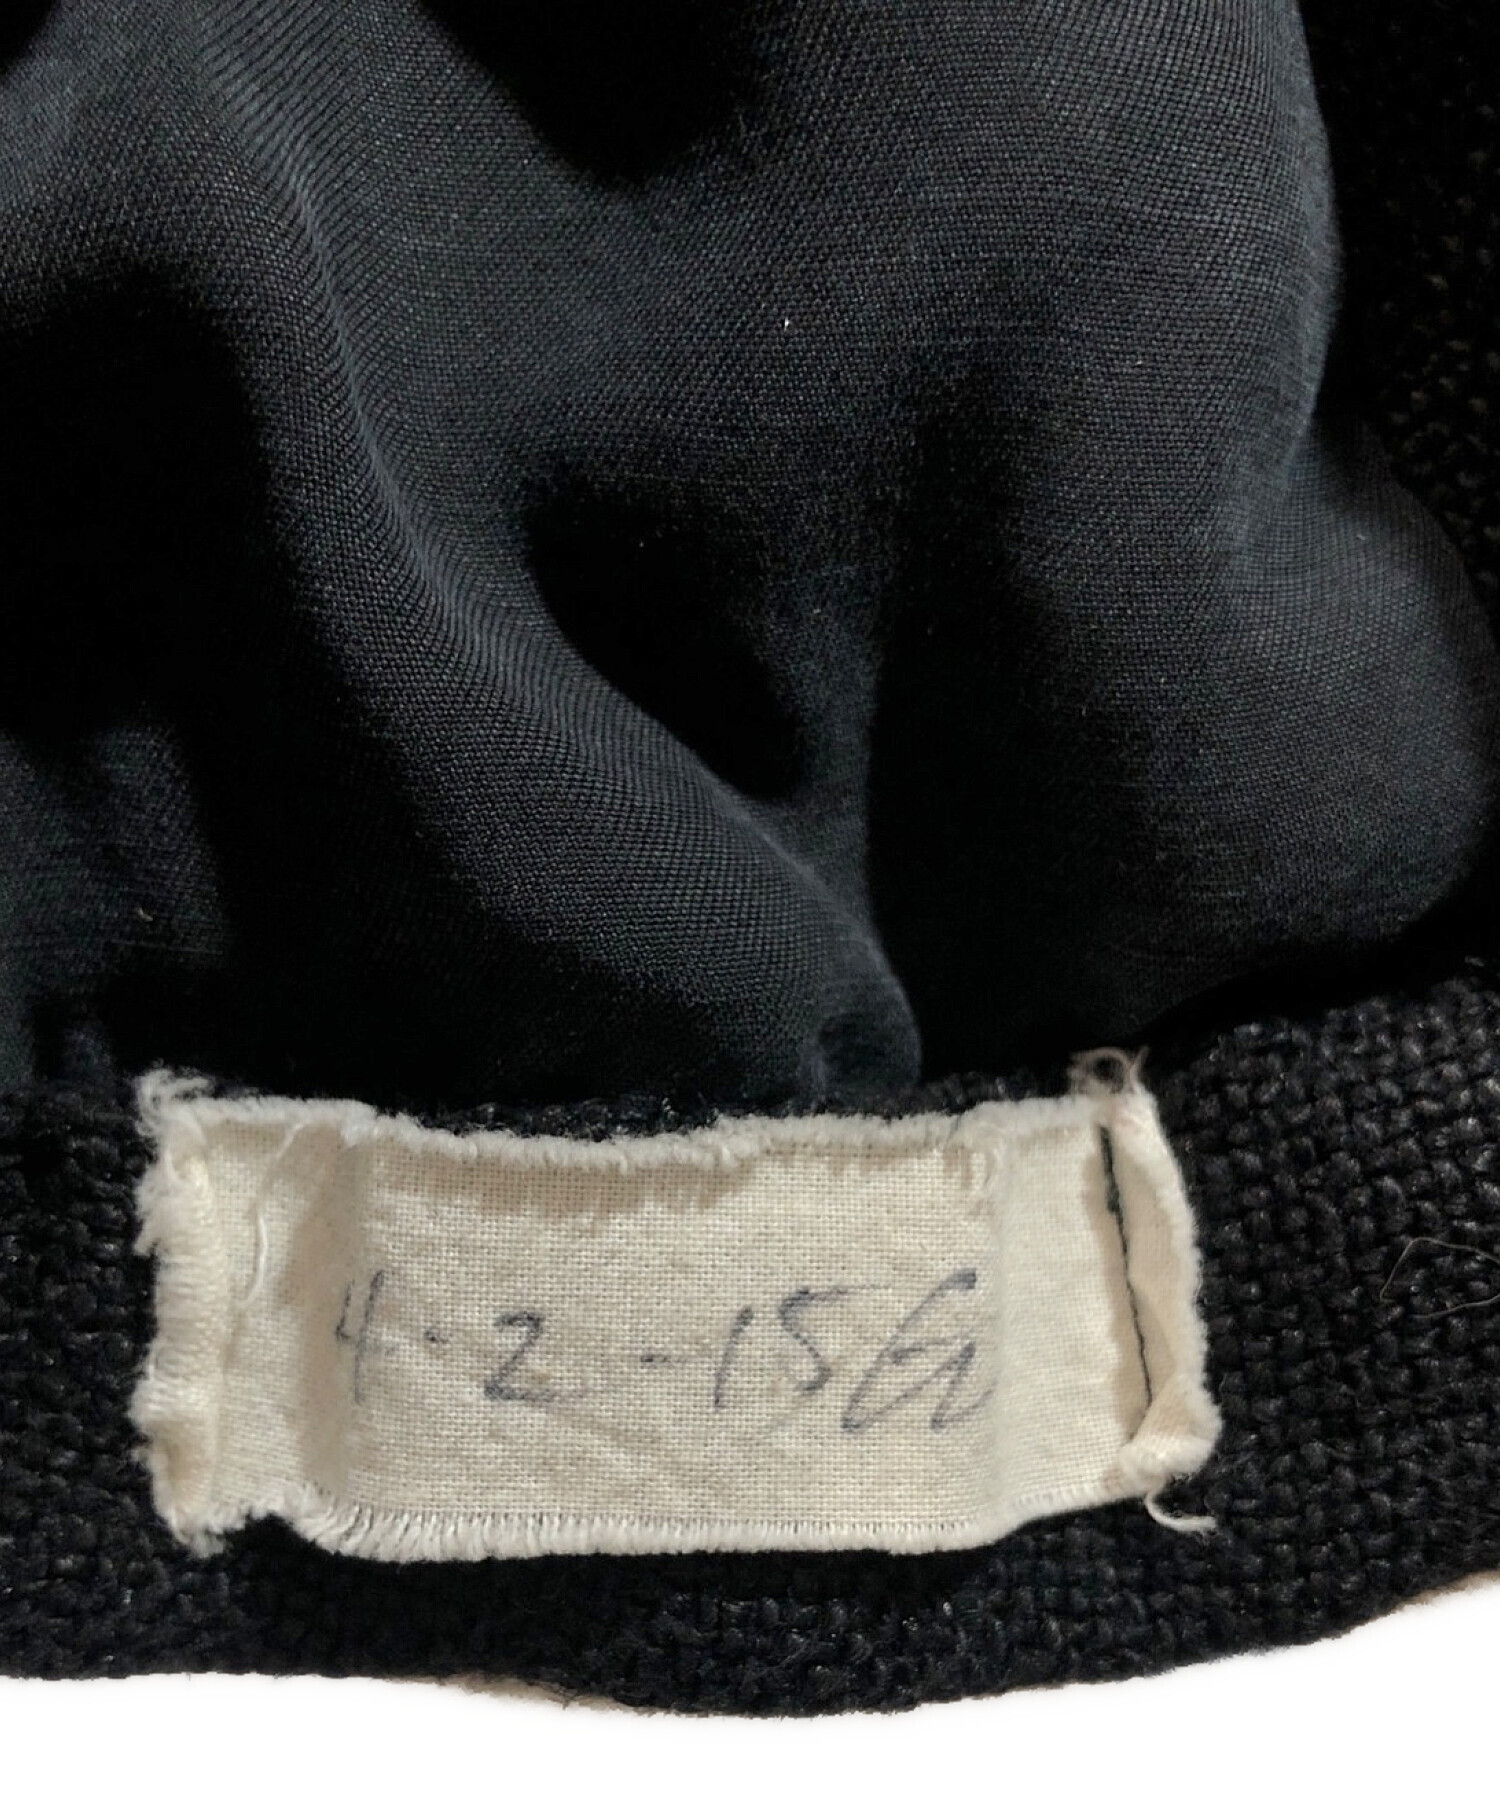 GREG LAUREN (グレッグローレン) リネンテーラードジャケット ブラック サイズ:2